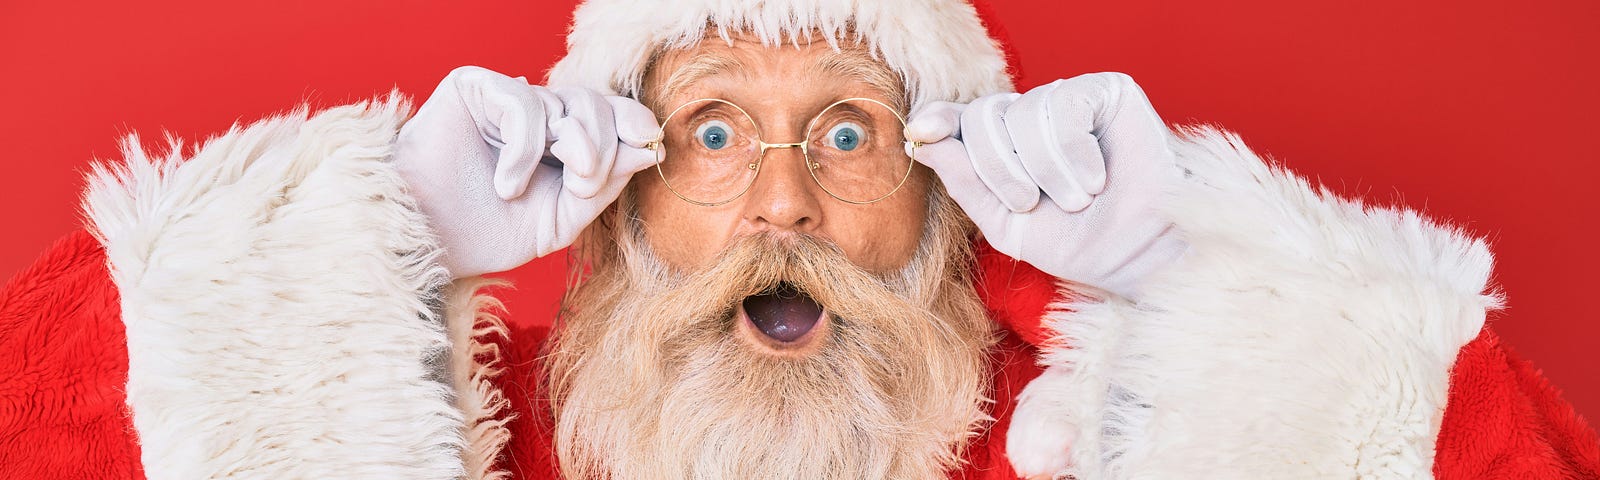 Santa looking shocked